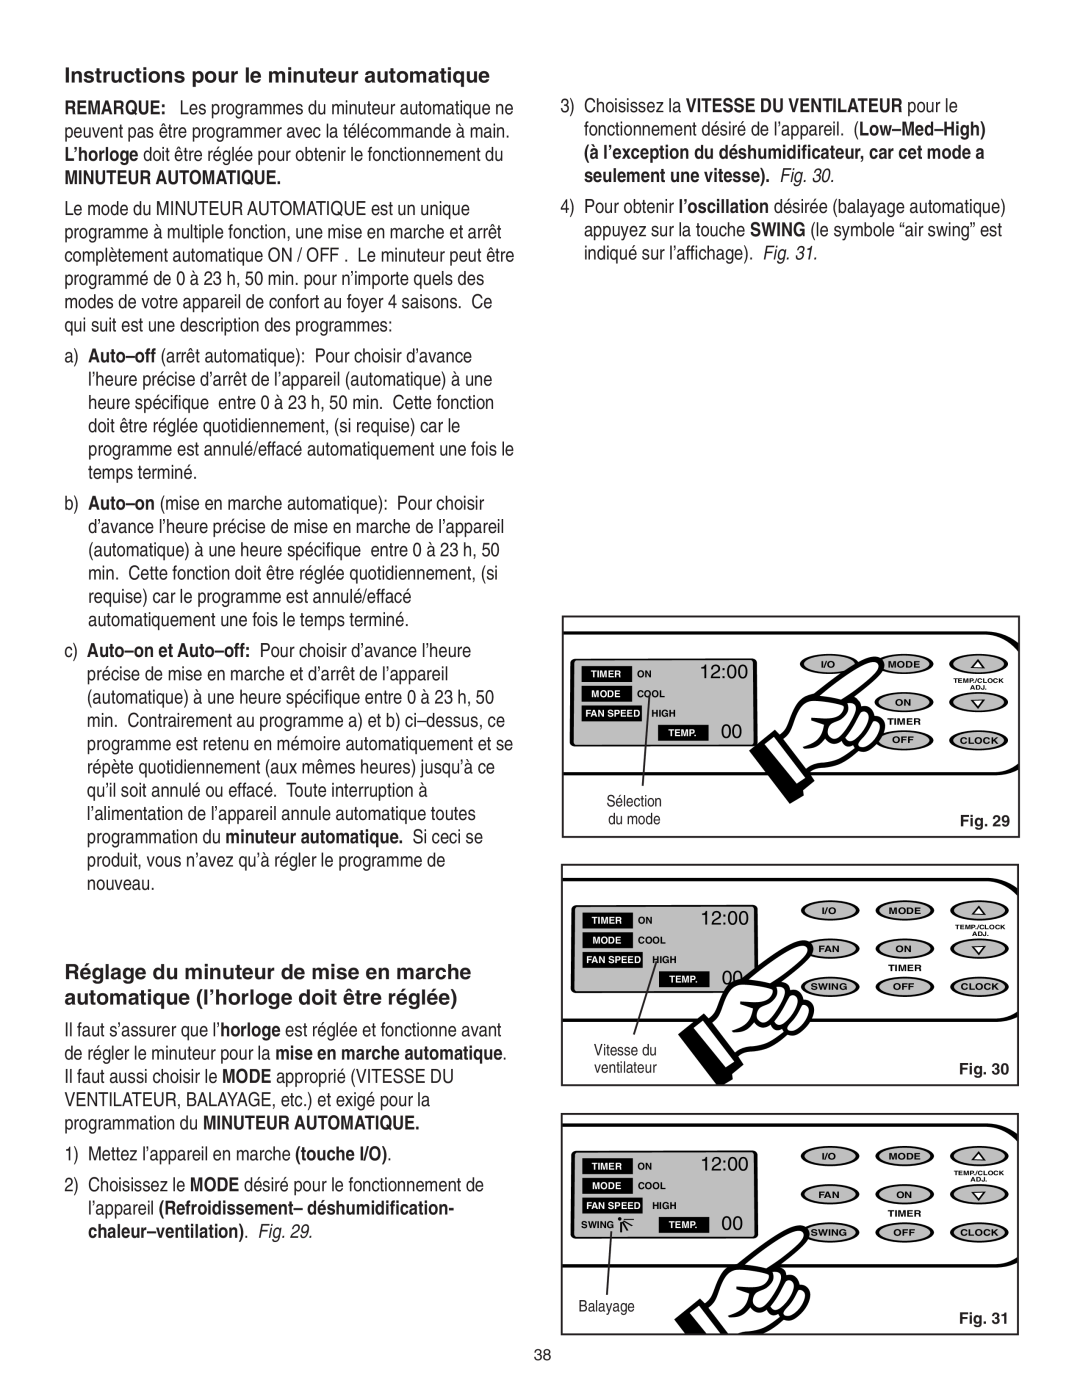 Danby SPAC8499 manual Instructions pour le minuteur automatique, Minuteur Automatique, 12:00 